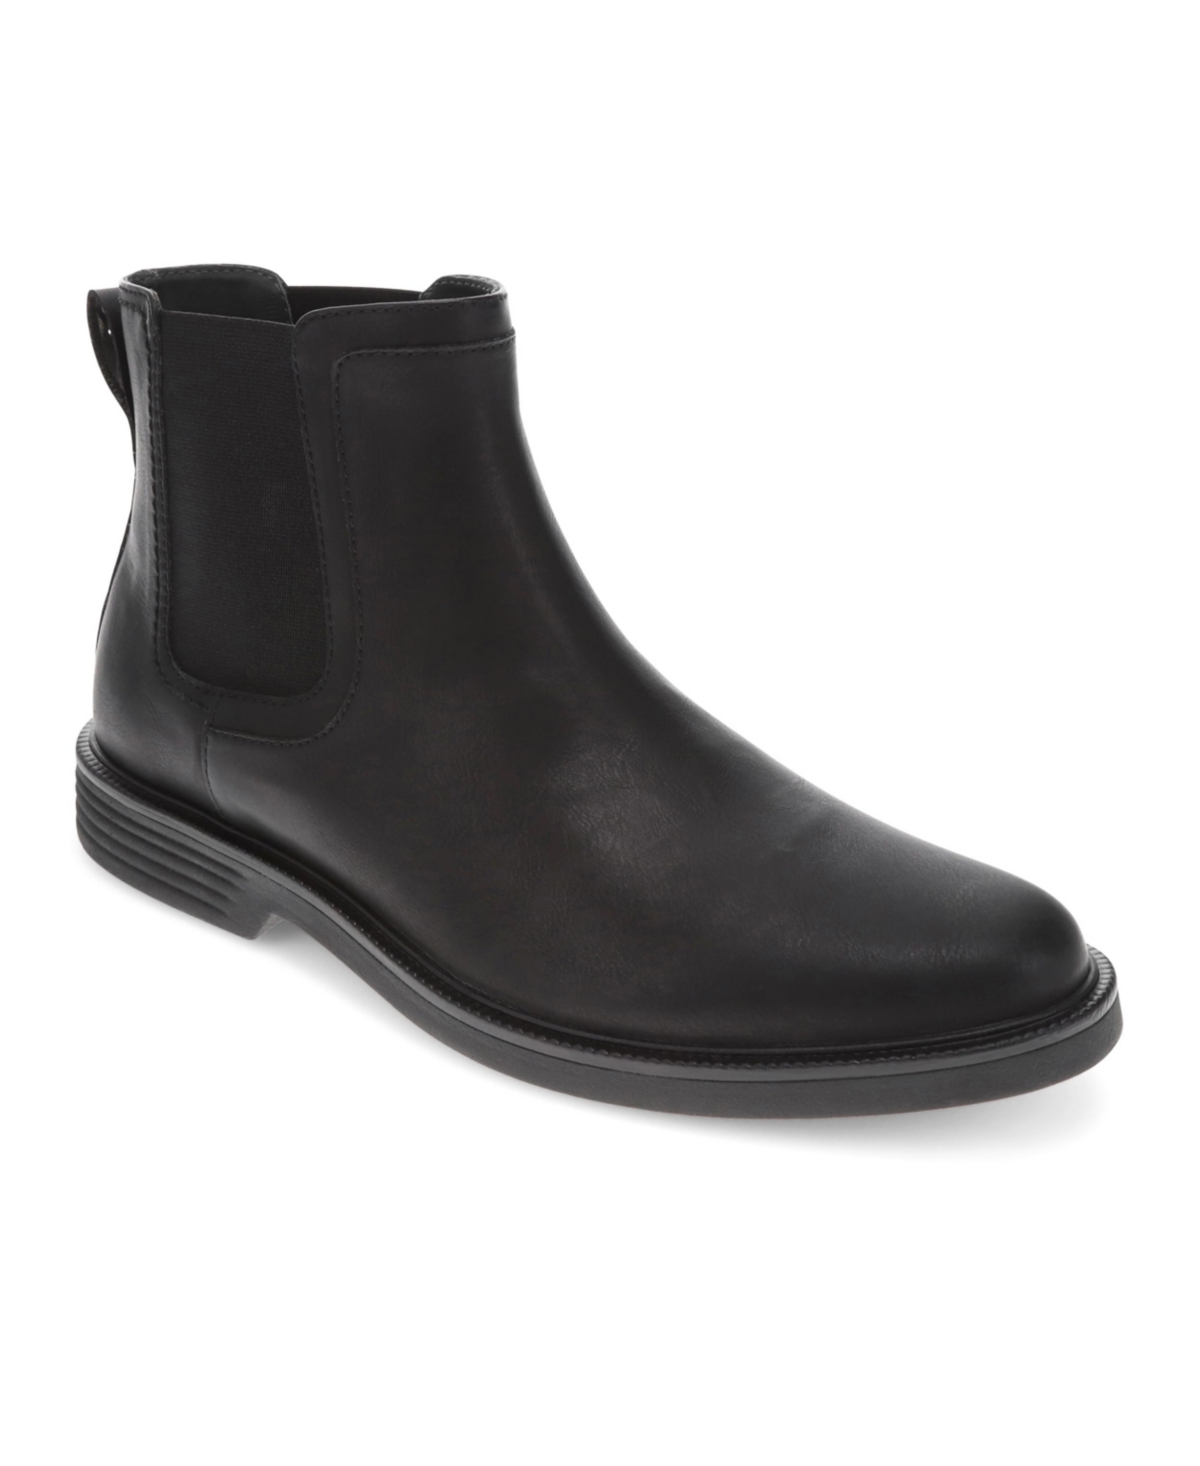 Men's Townsend Slip Resistant Faux Leather Comfort Boots - Black